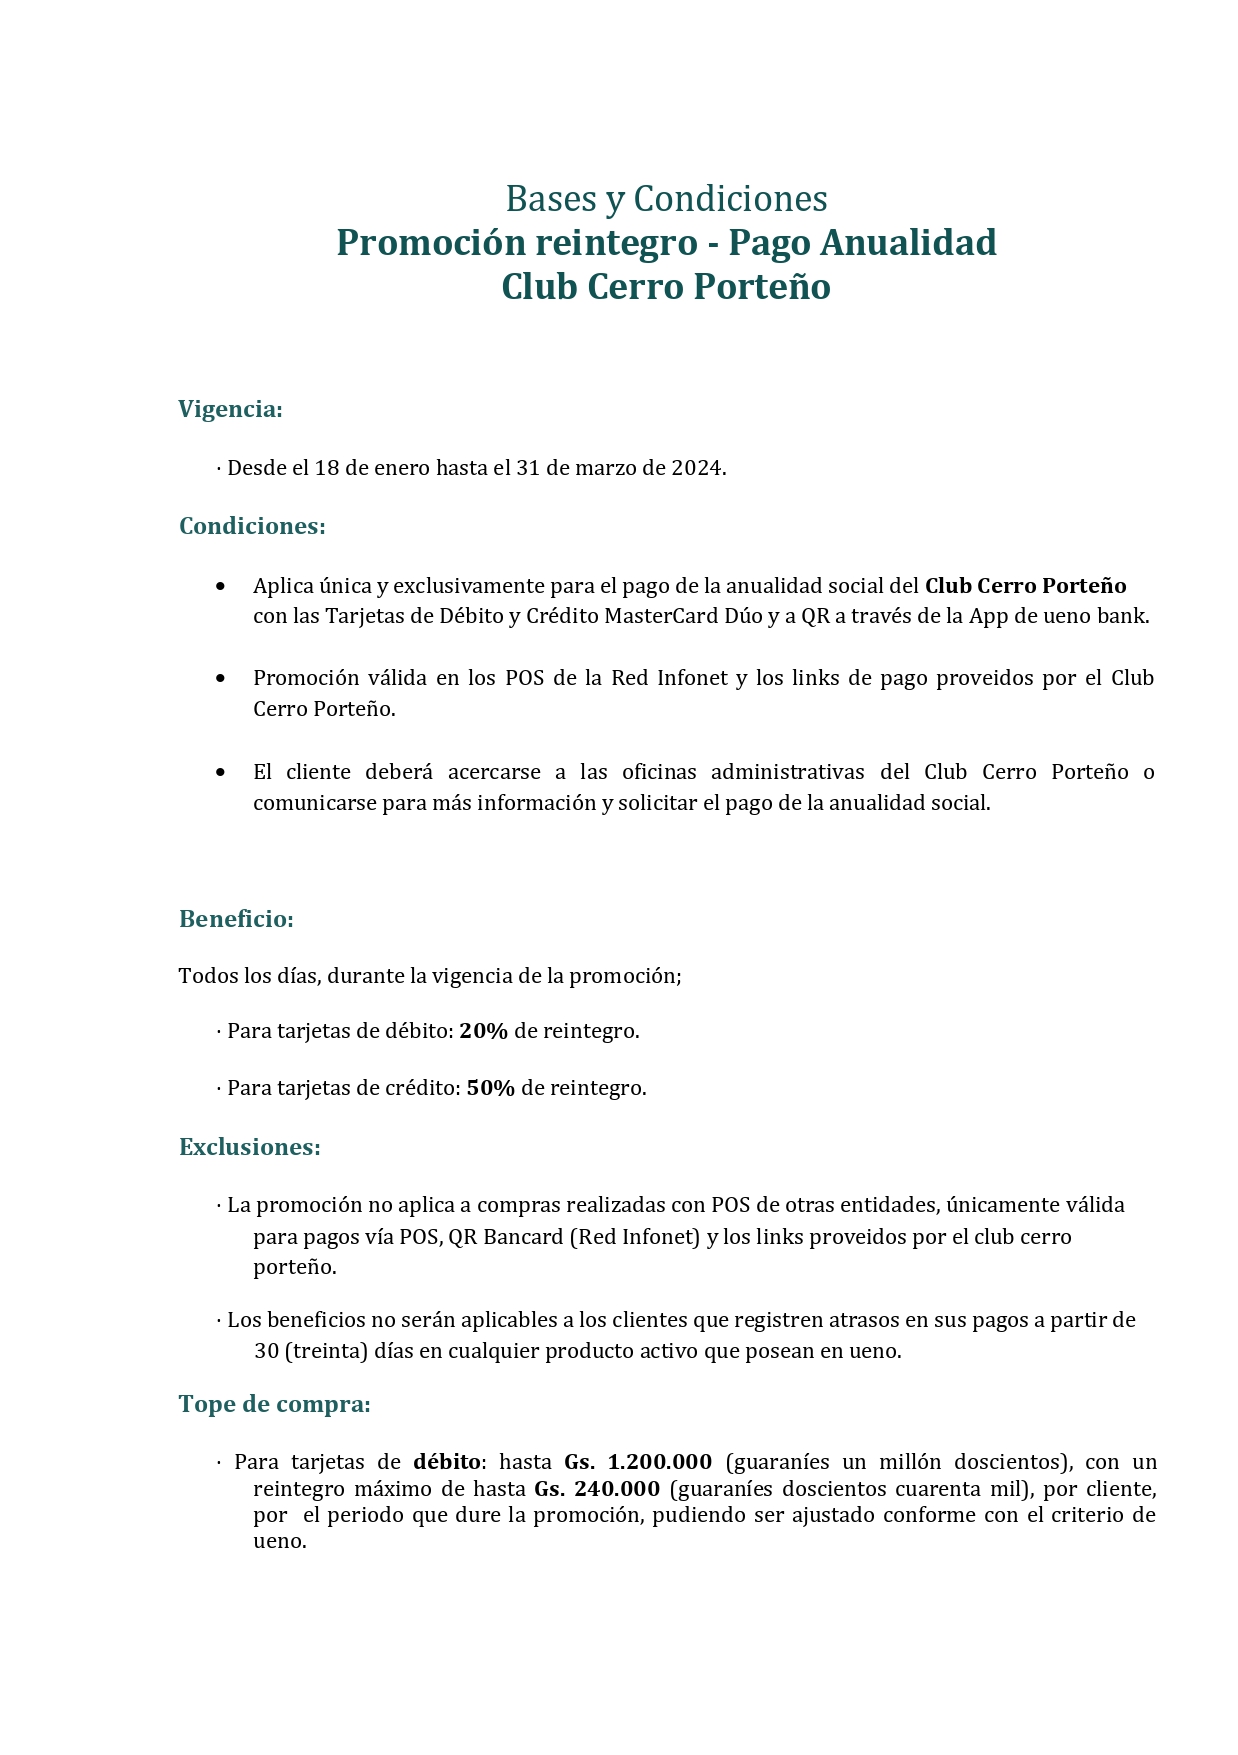 Promoción reintegro - Pago Anualidad ccp (1) (1)_page-0001.jpg